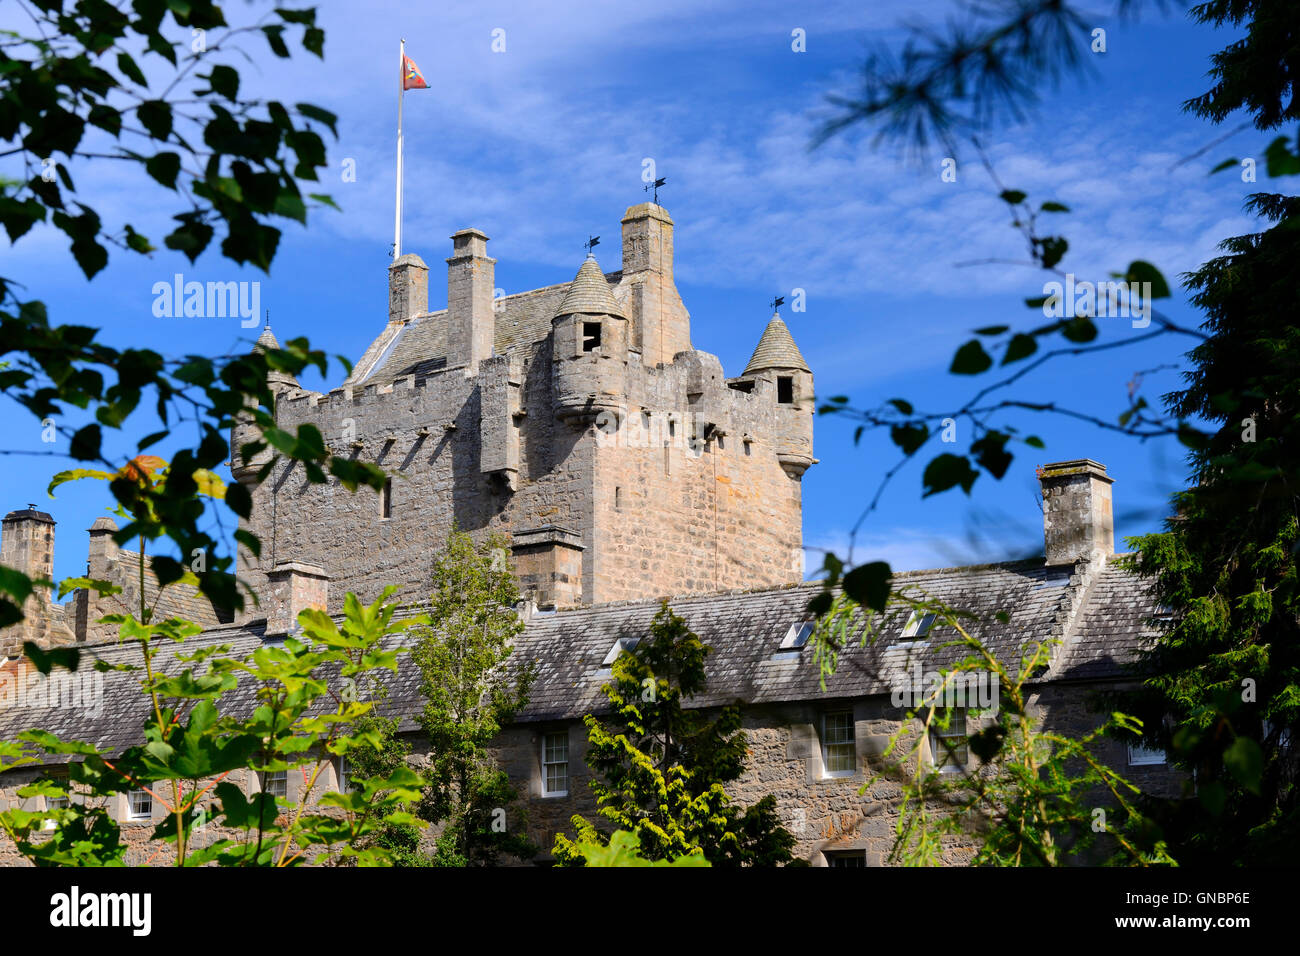 Cawdor Castle near Nairn in Inverness shire, Scotland Stock Photo